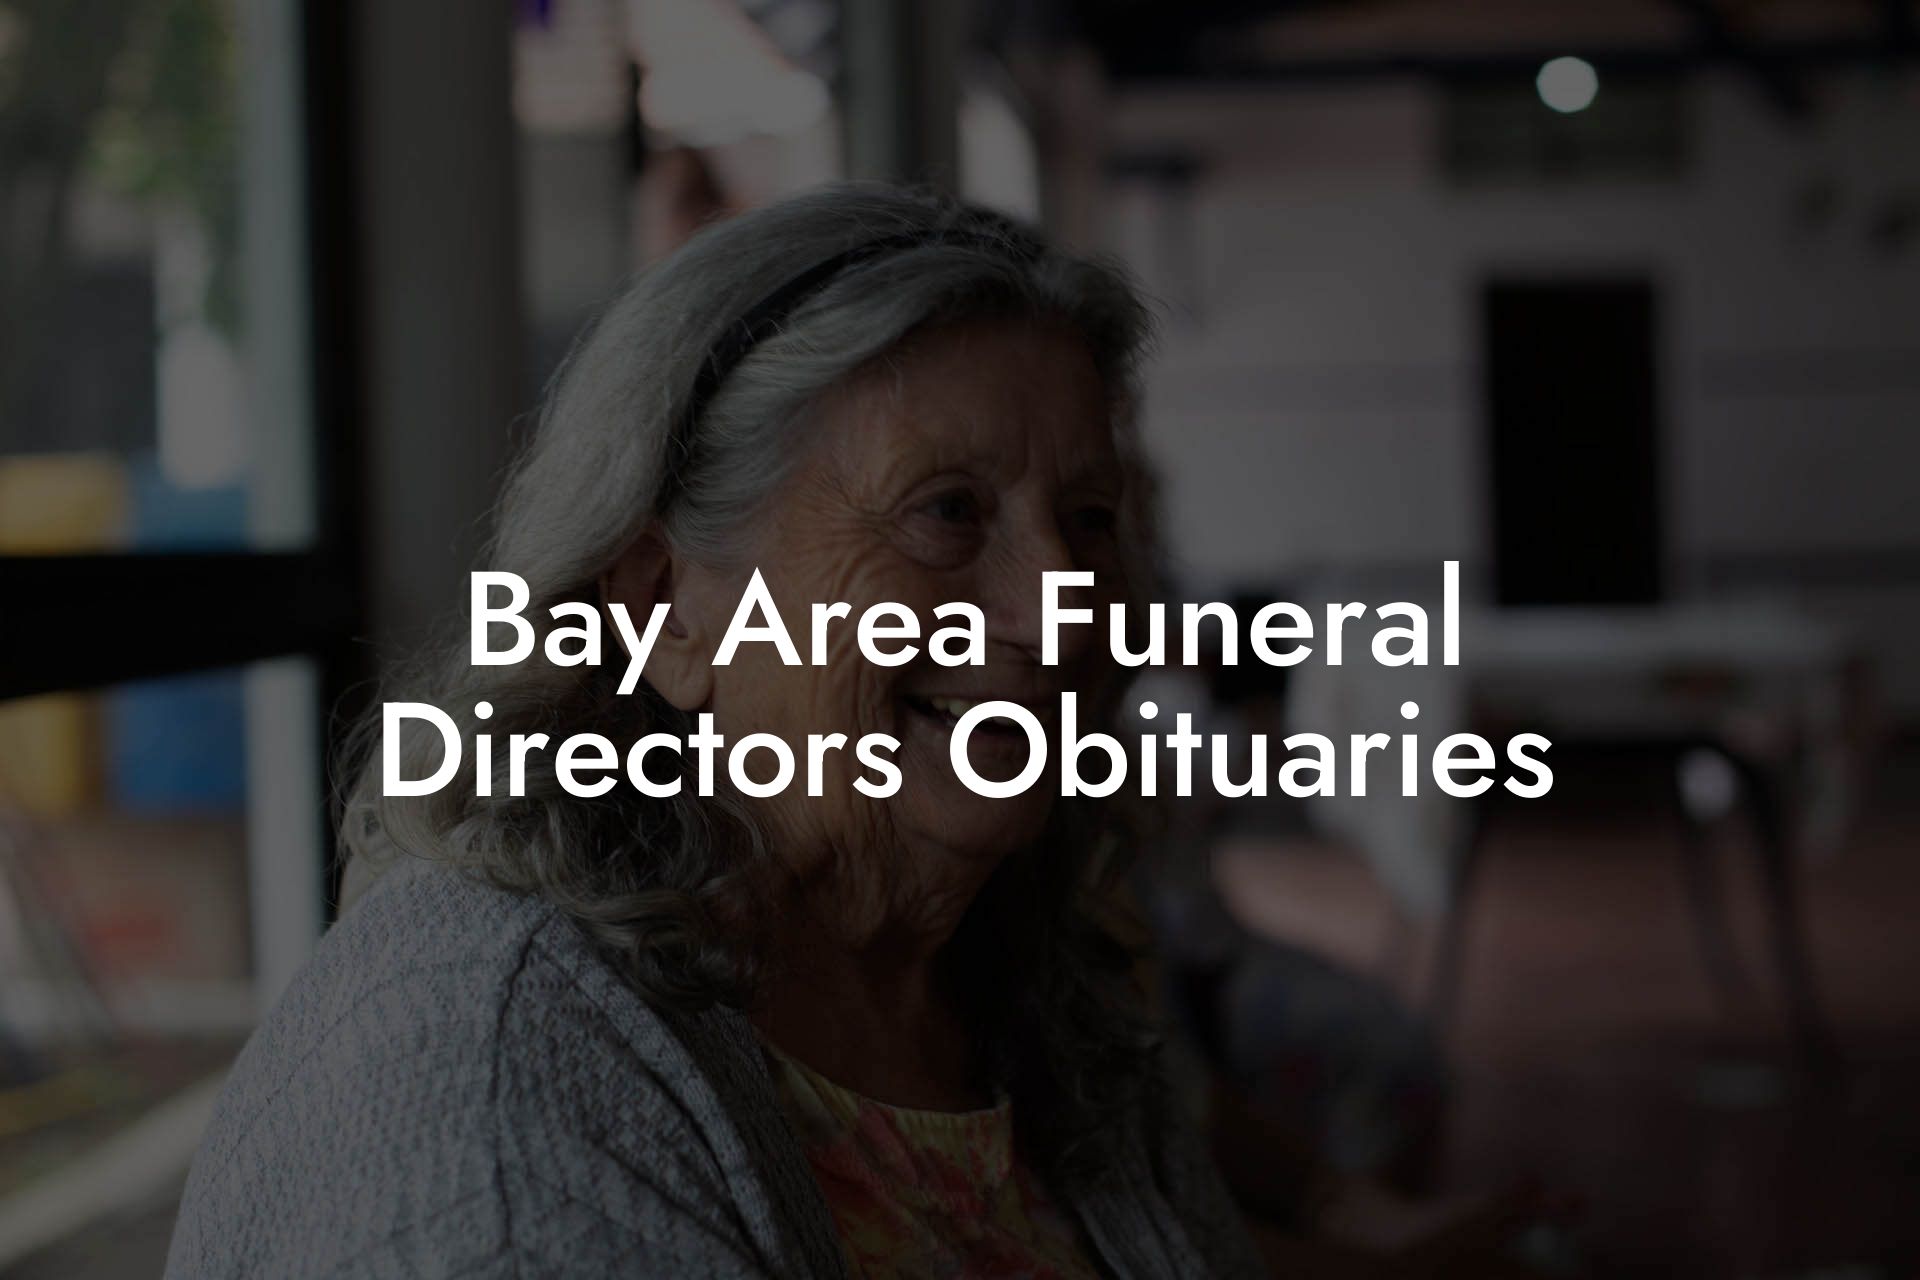 Bay Area Funeral Directors Obituaries